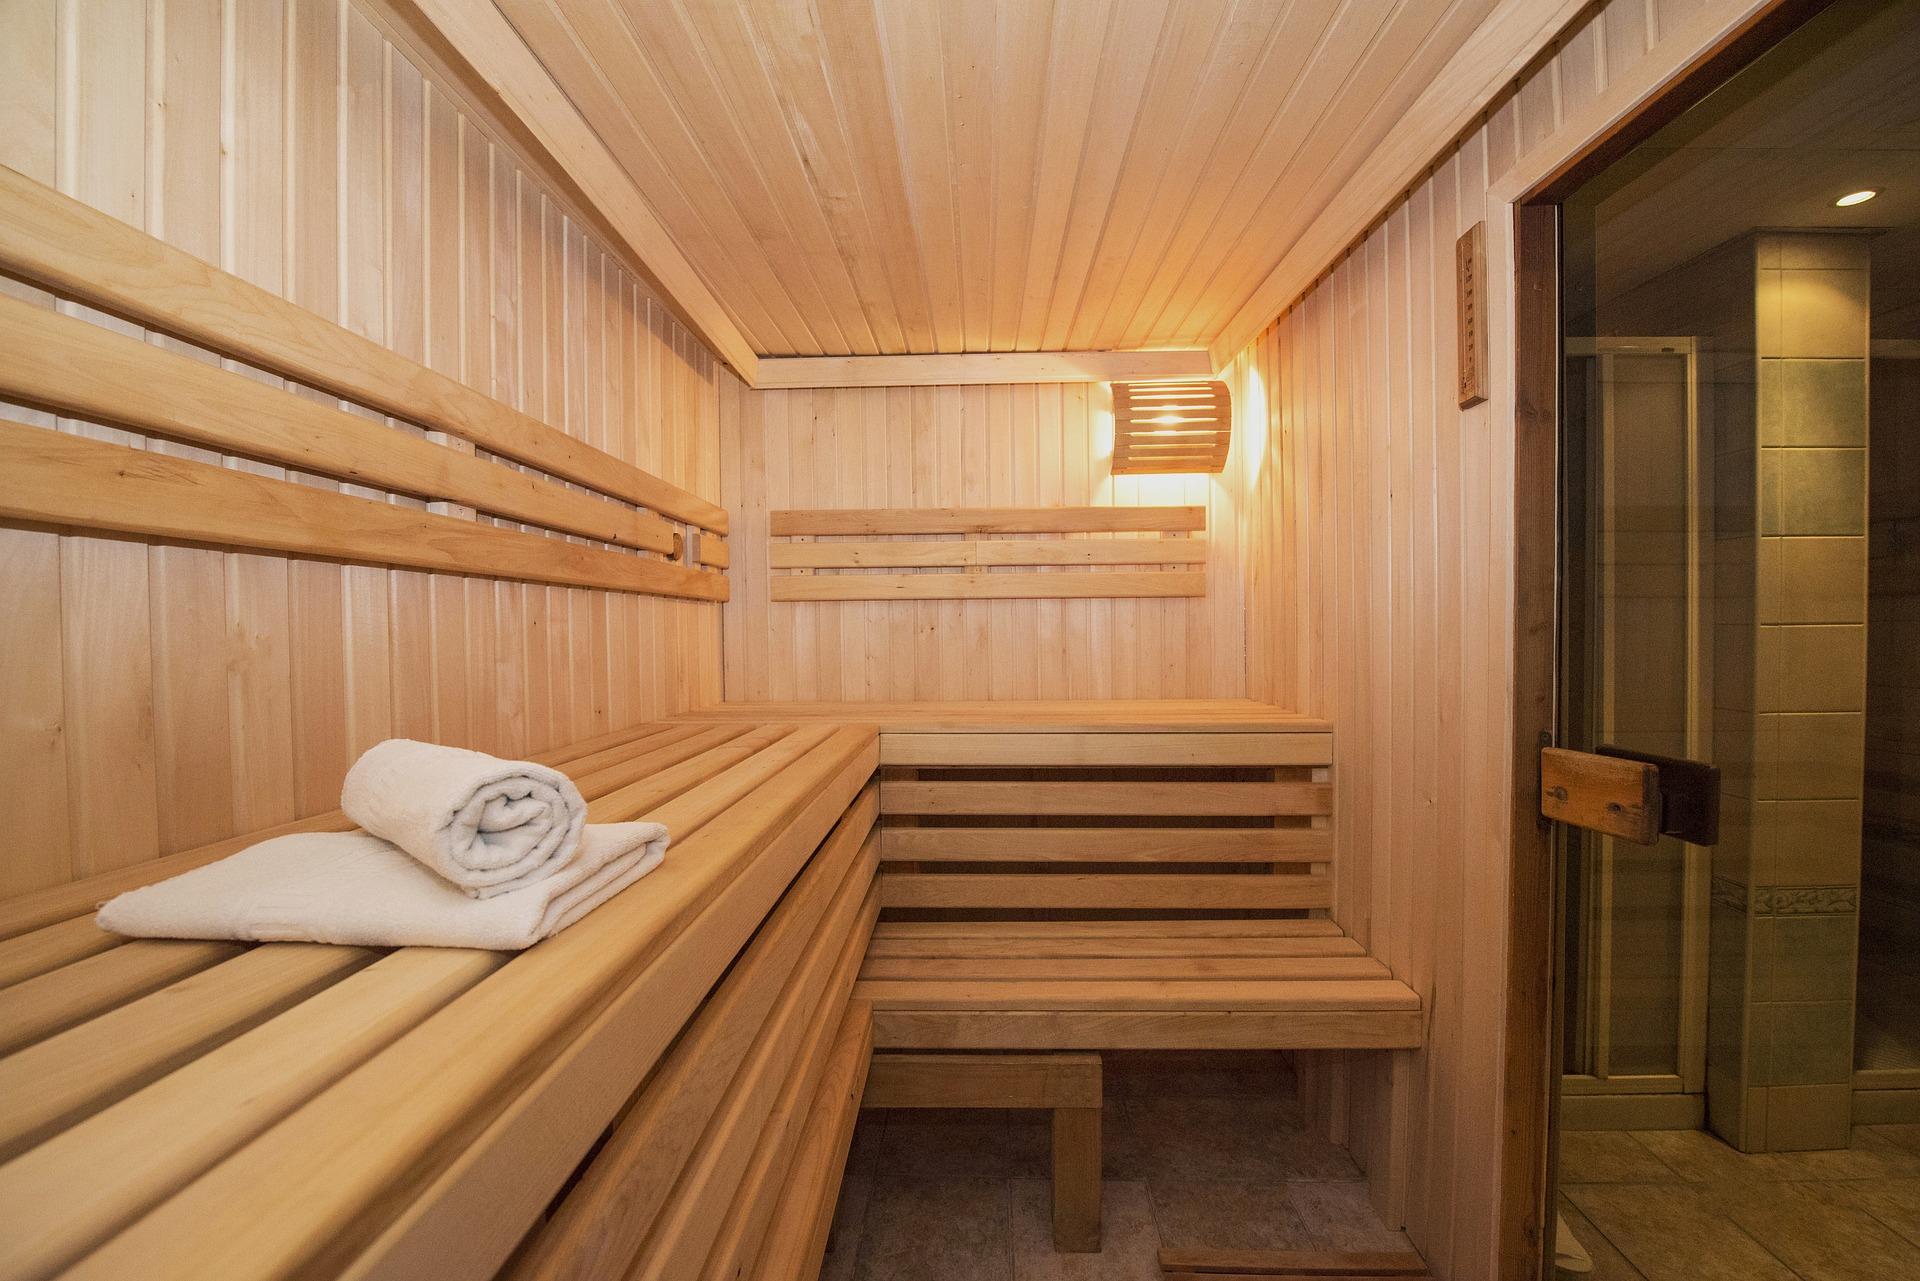 het is nutteloos audit golf Hoe kun je goedkoop naar de sauna? | DIK.NL